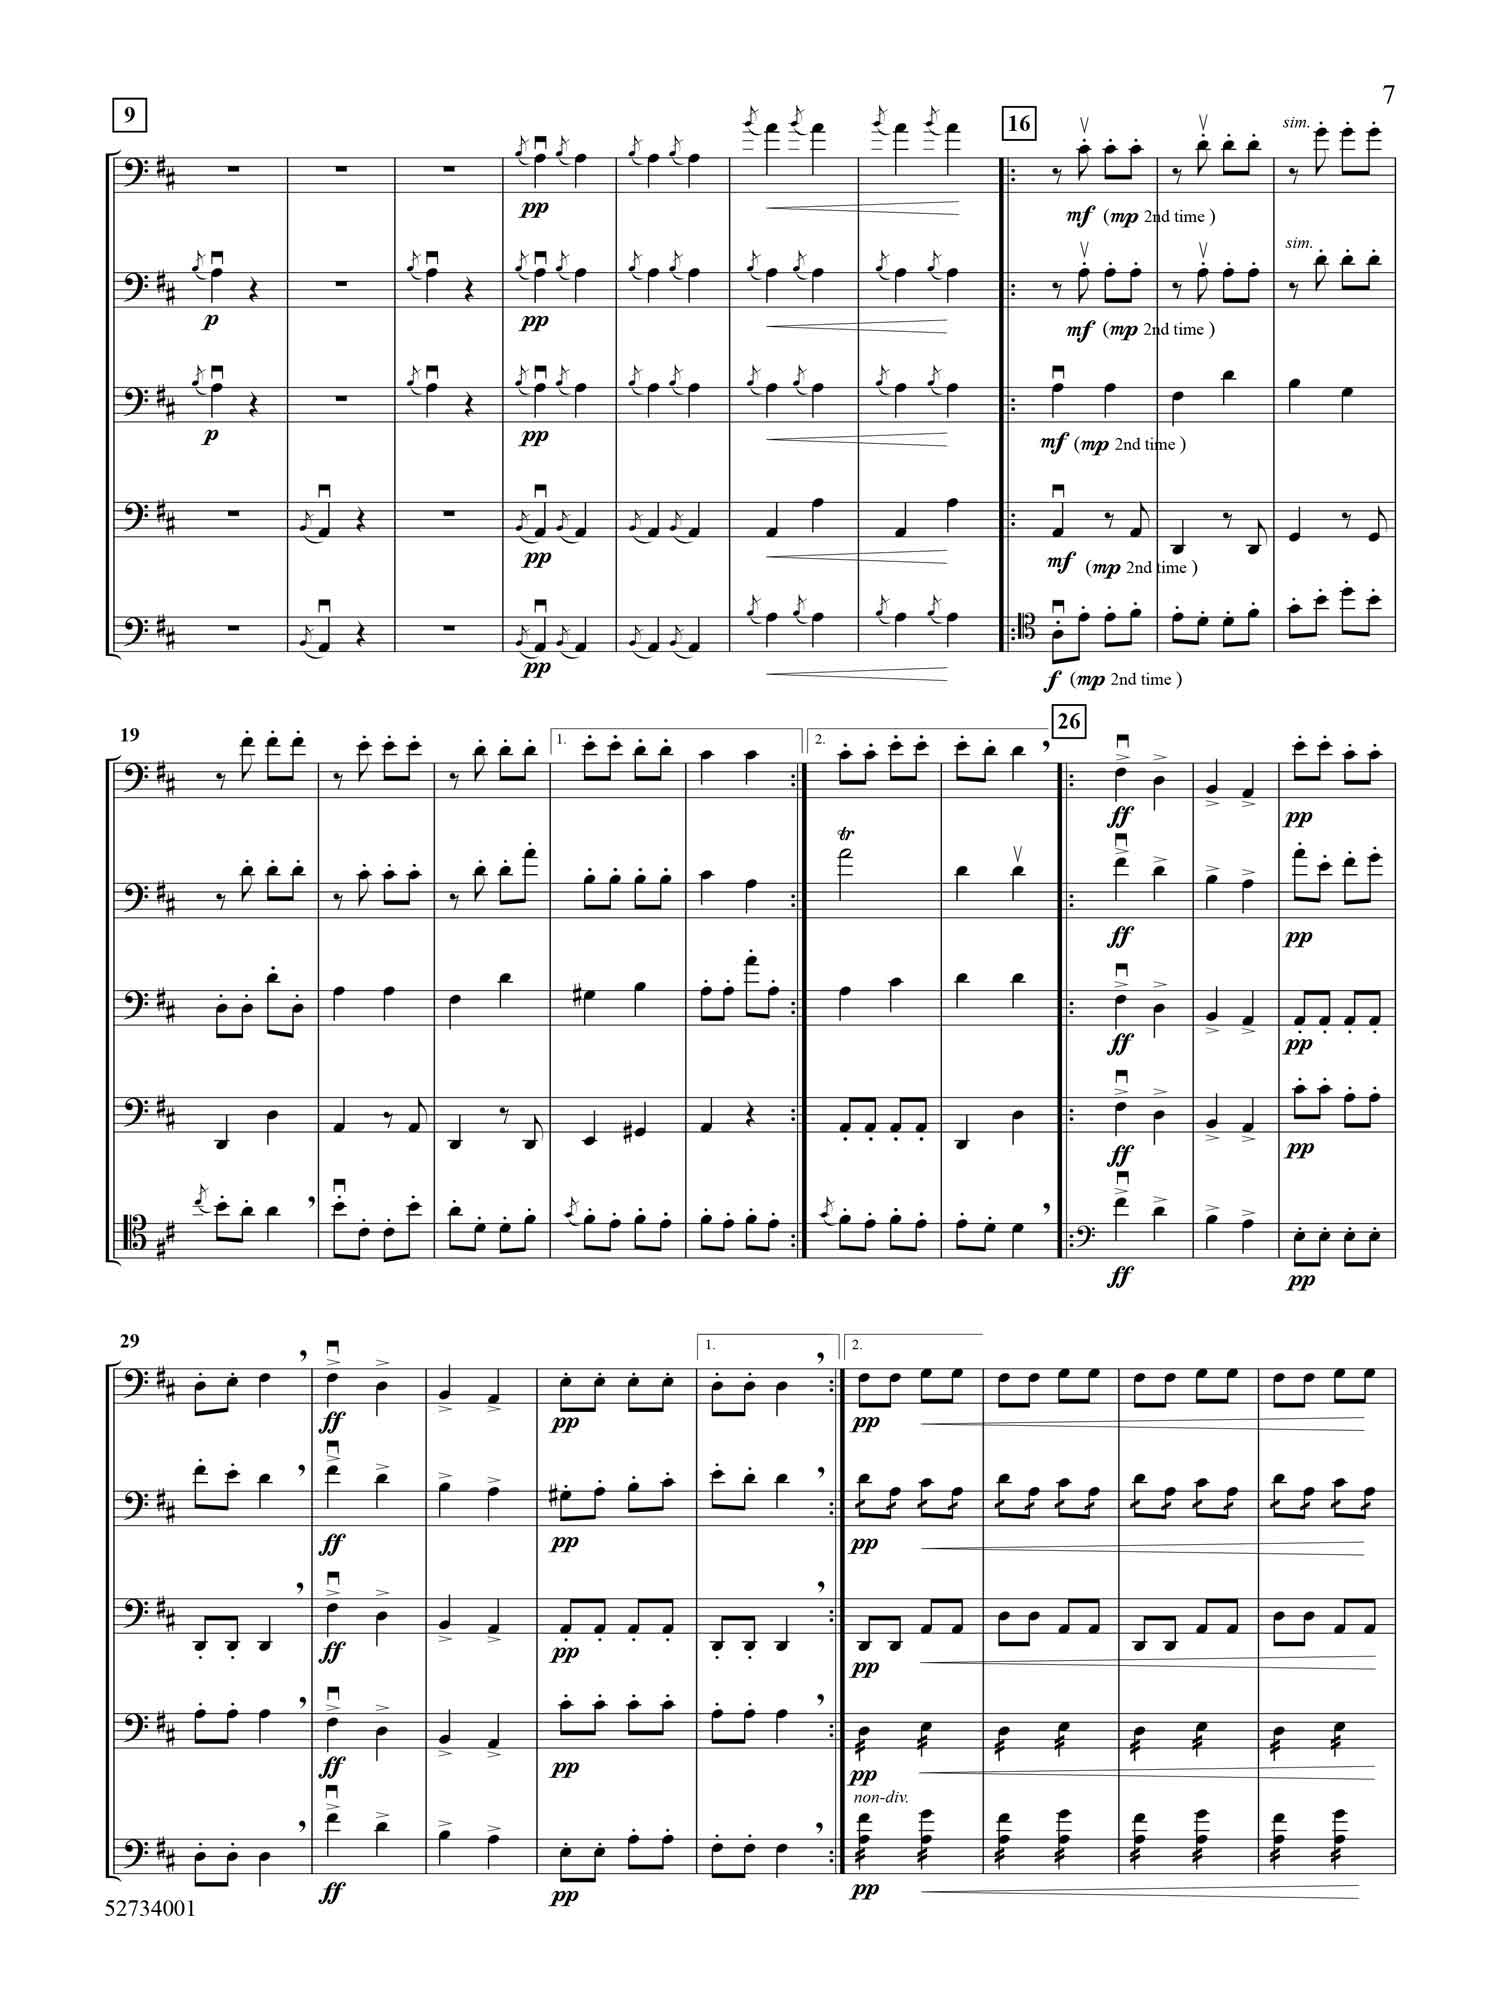 rondeau-des-metamorphoses-cancan-cello-quintet-score2.jpg